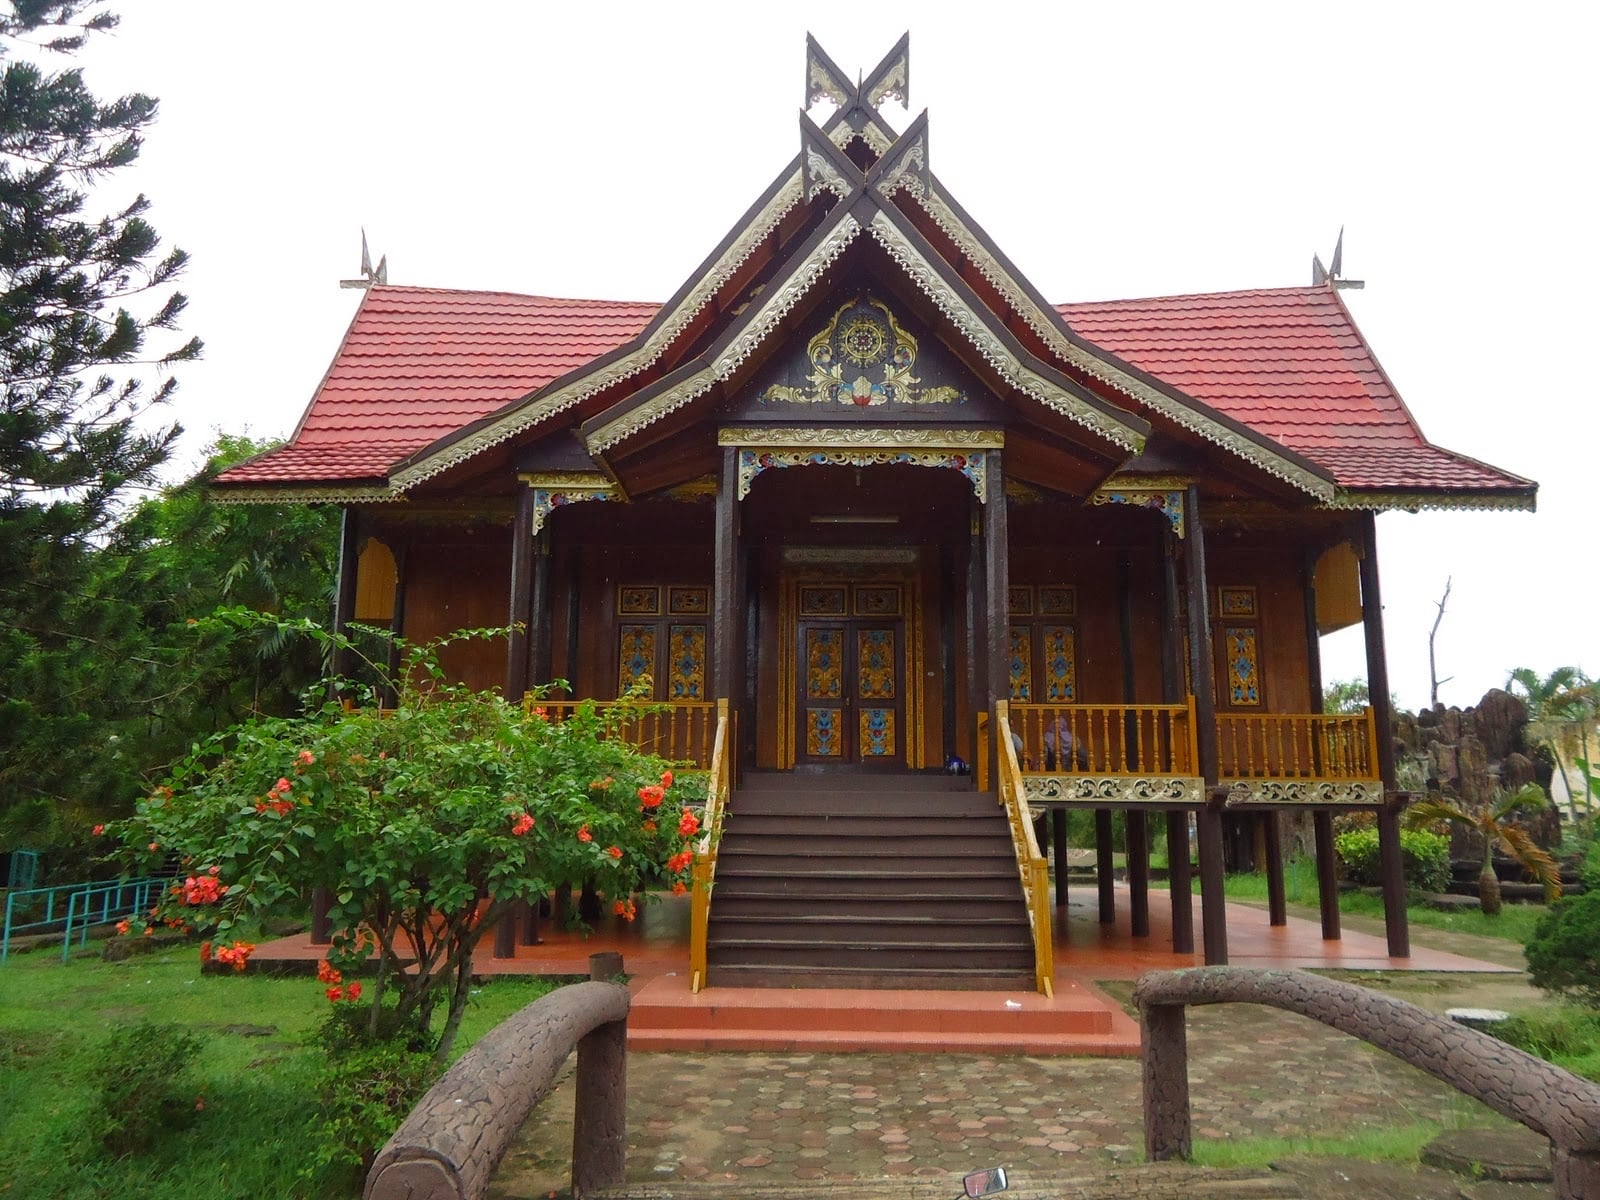 Terbaik 21 Gambar Rumah Adat Kalimantan Selatan 45 Di Ide Renovasi Rumah dengan 21 Gambar Rumah Adat Kalimantan Selatan